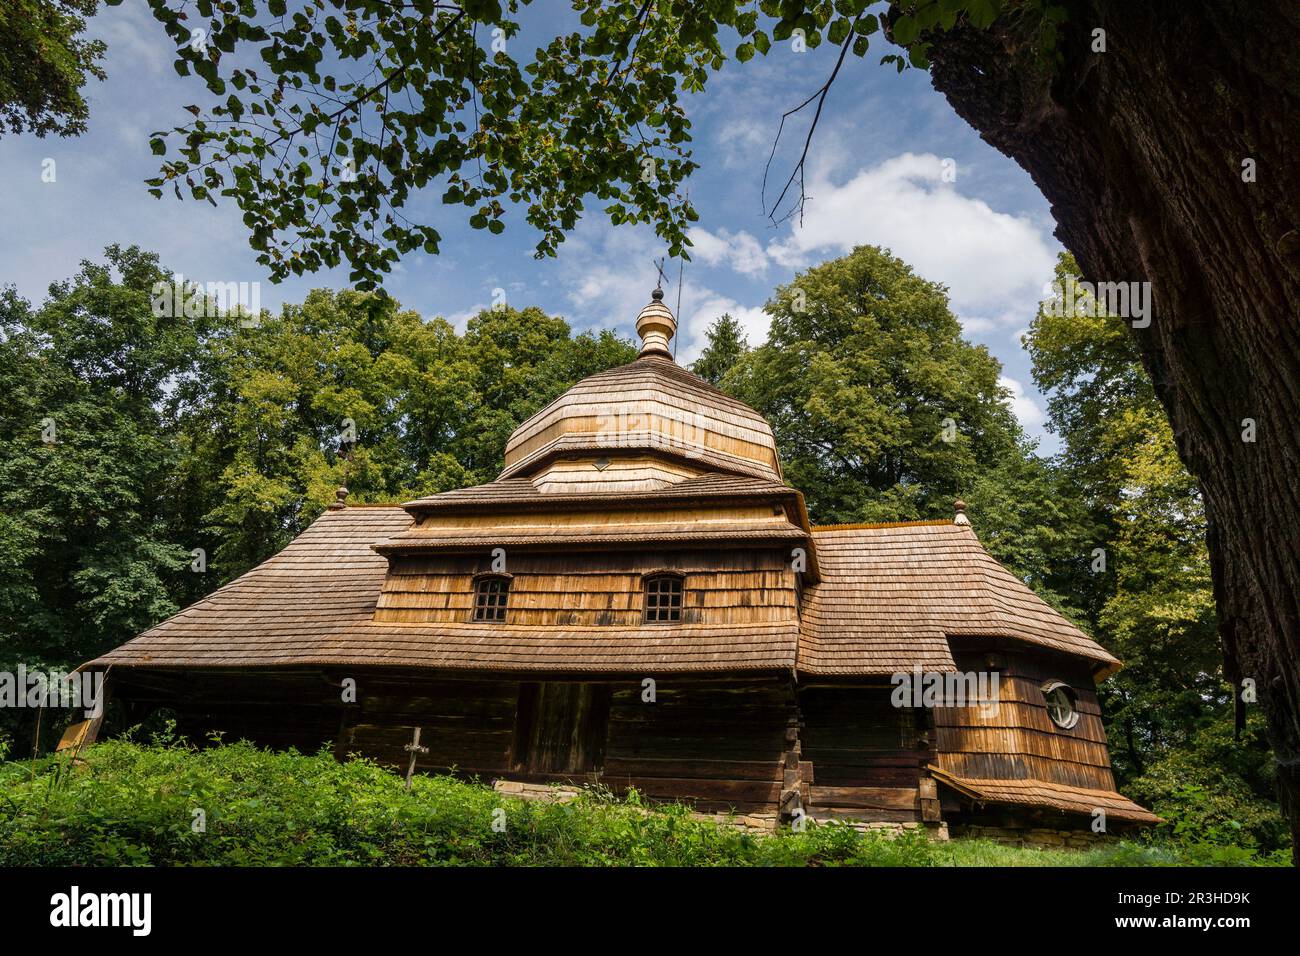 iglesia de madera, Ulucz, templo uniata construida en 1510-1659, valle del rio San, voivodato de la Pequeña Polonia, Cárpatos, Polonia, europe. Stock Photo